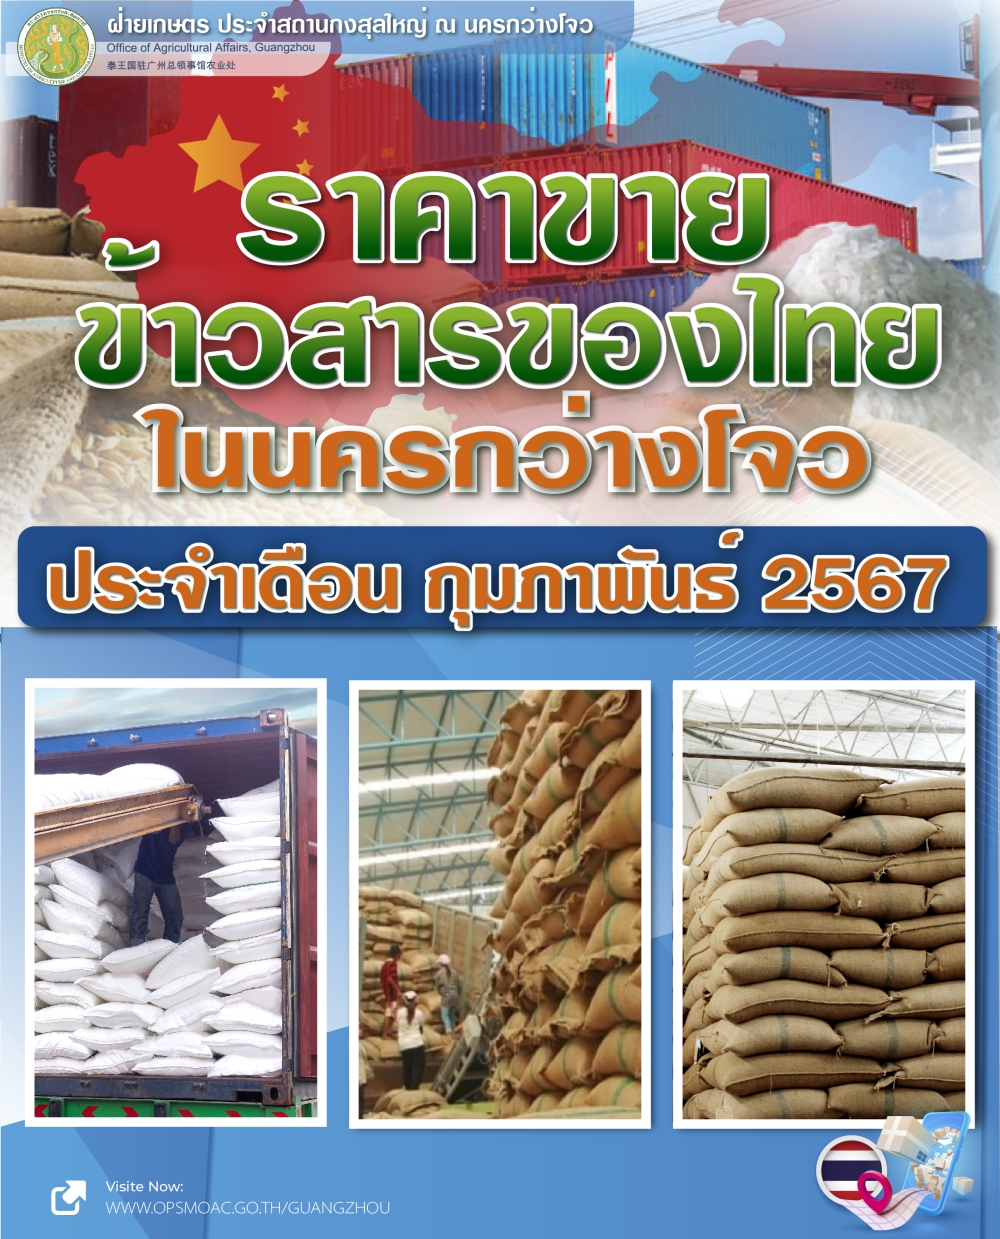 ราคาขายข้าวสารของไทยในนครกว่างโจว